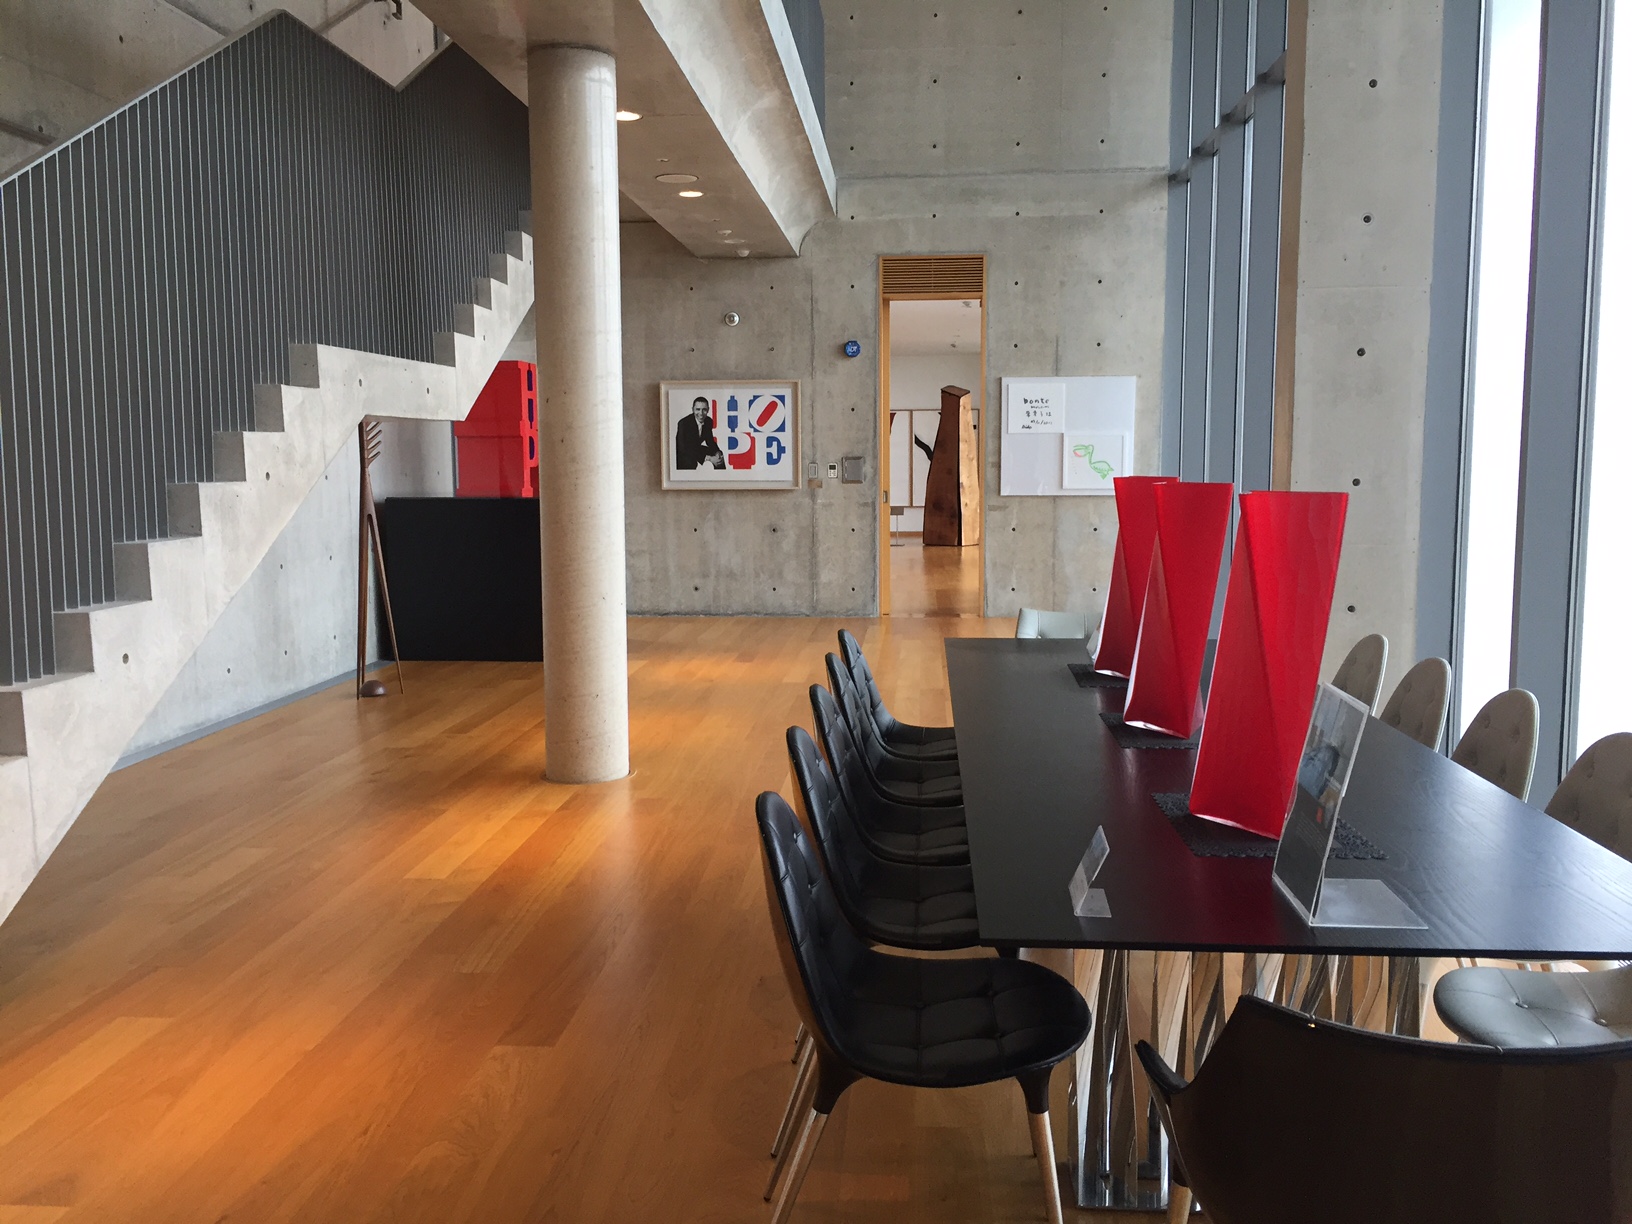 현대미술 작품들을 선보이는 2관 전시실. 마당으로 연결돼 다양한 행사를 수용할 수 있도록 했다.